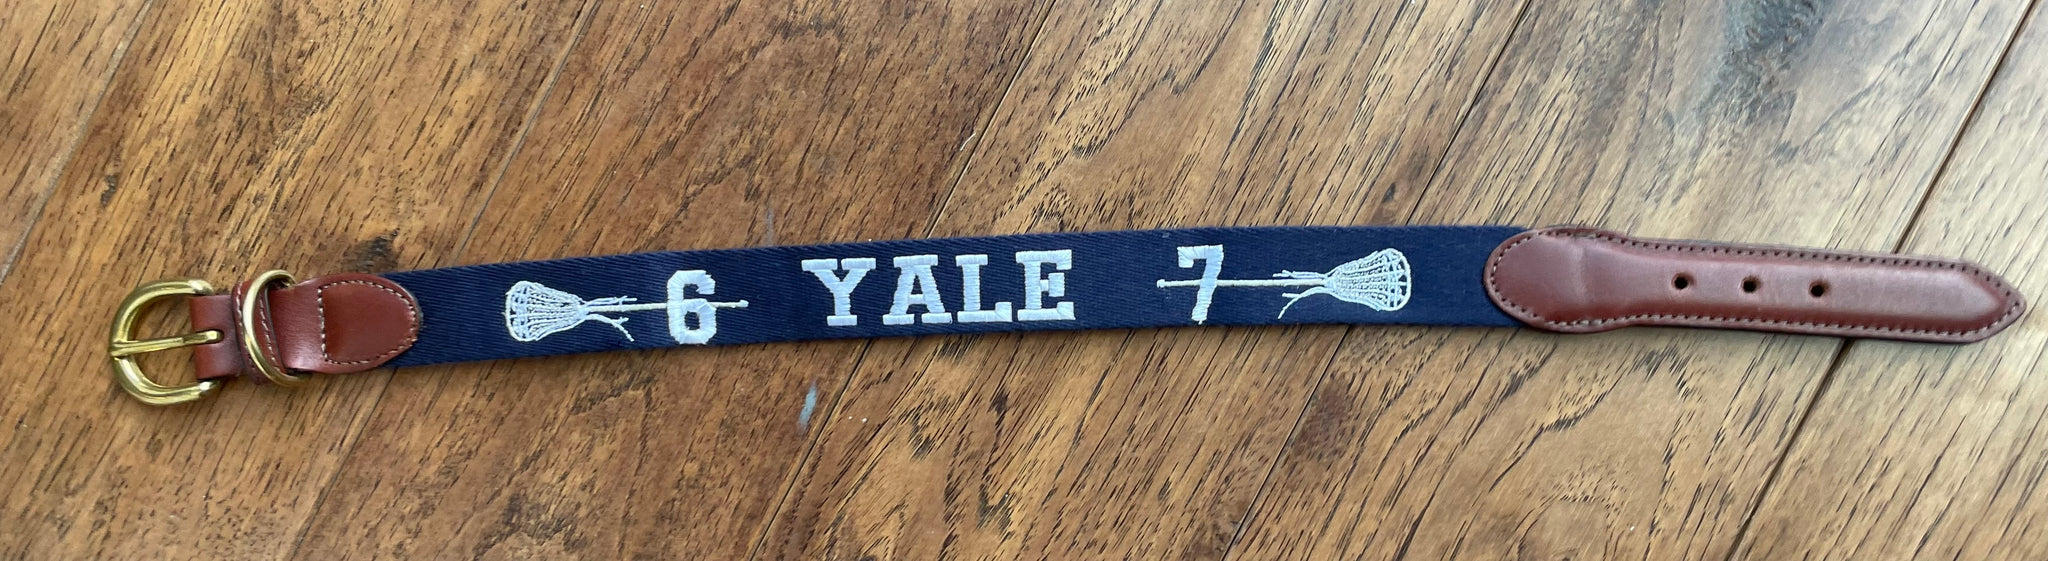 Yale Dog Collar